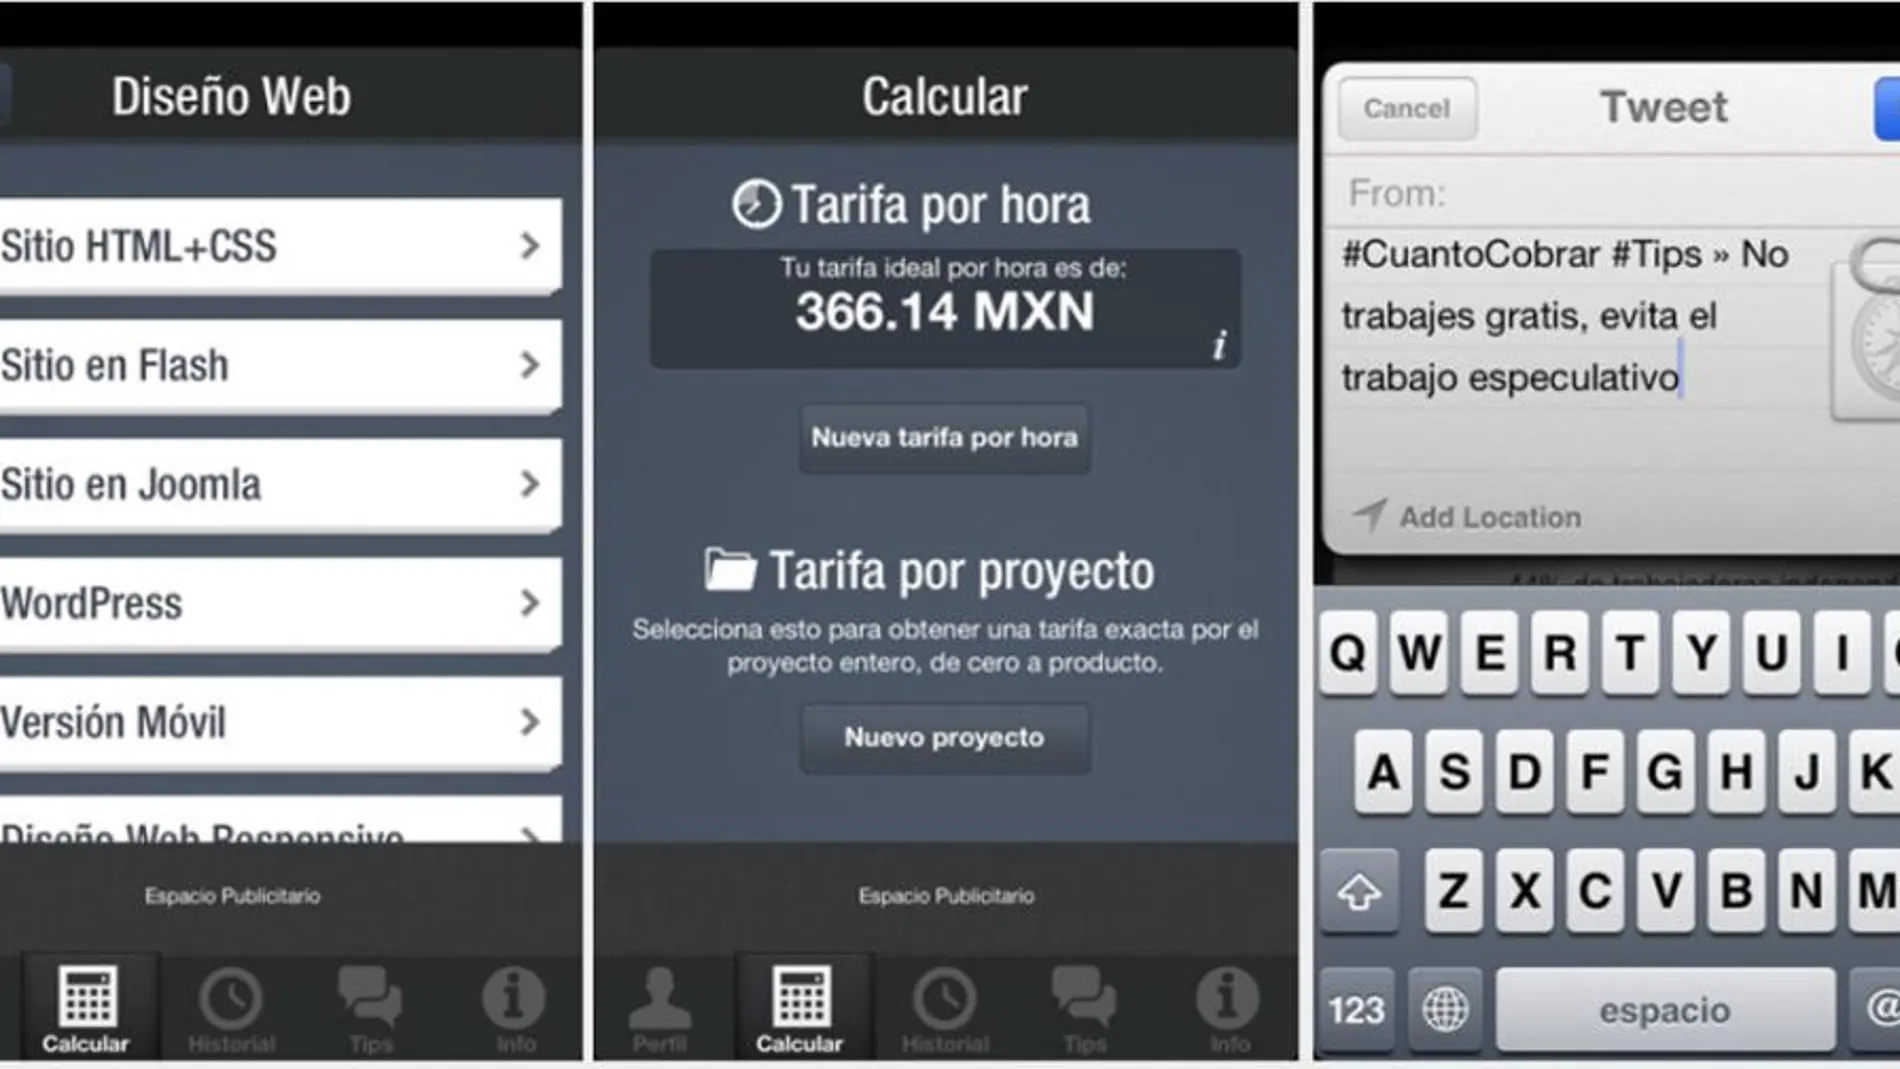 CuantoCobrar, una app para autónomos y freelancers que abogan por el #gratisnotrabajo